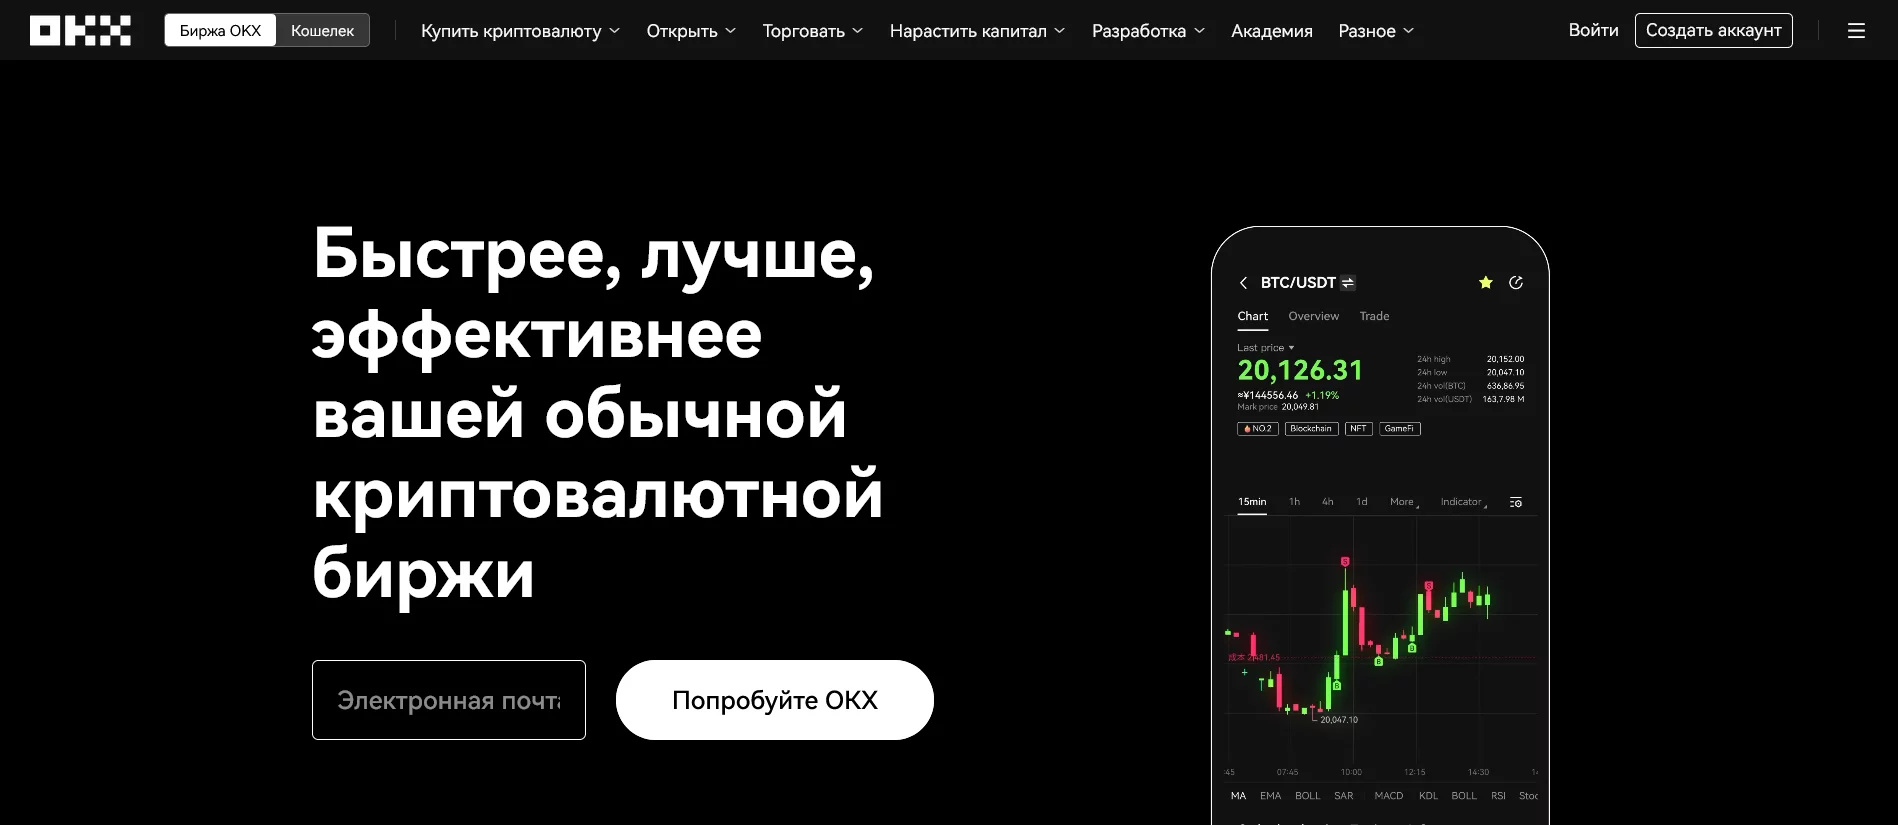 Главная страница криптовалютной биржи OKX